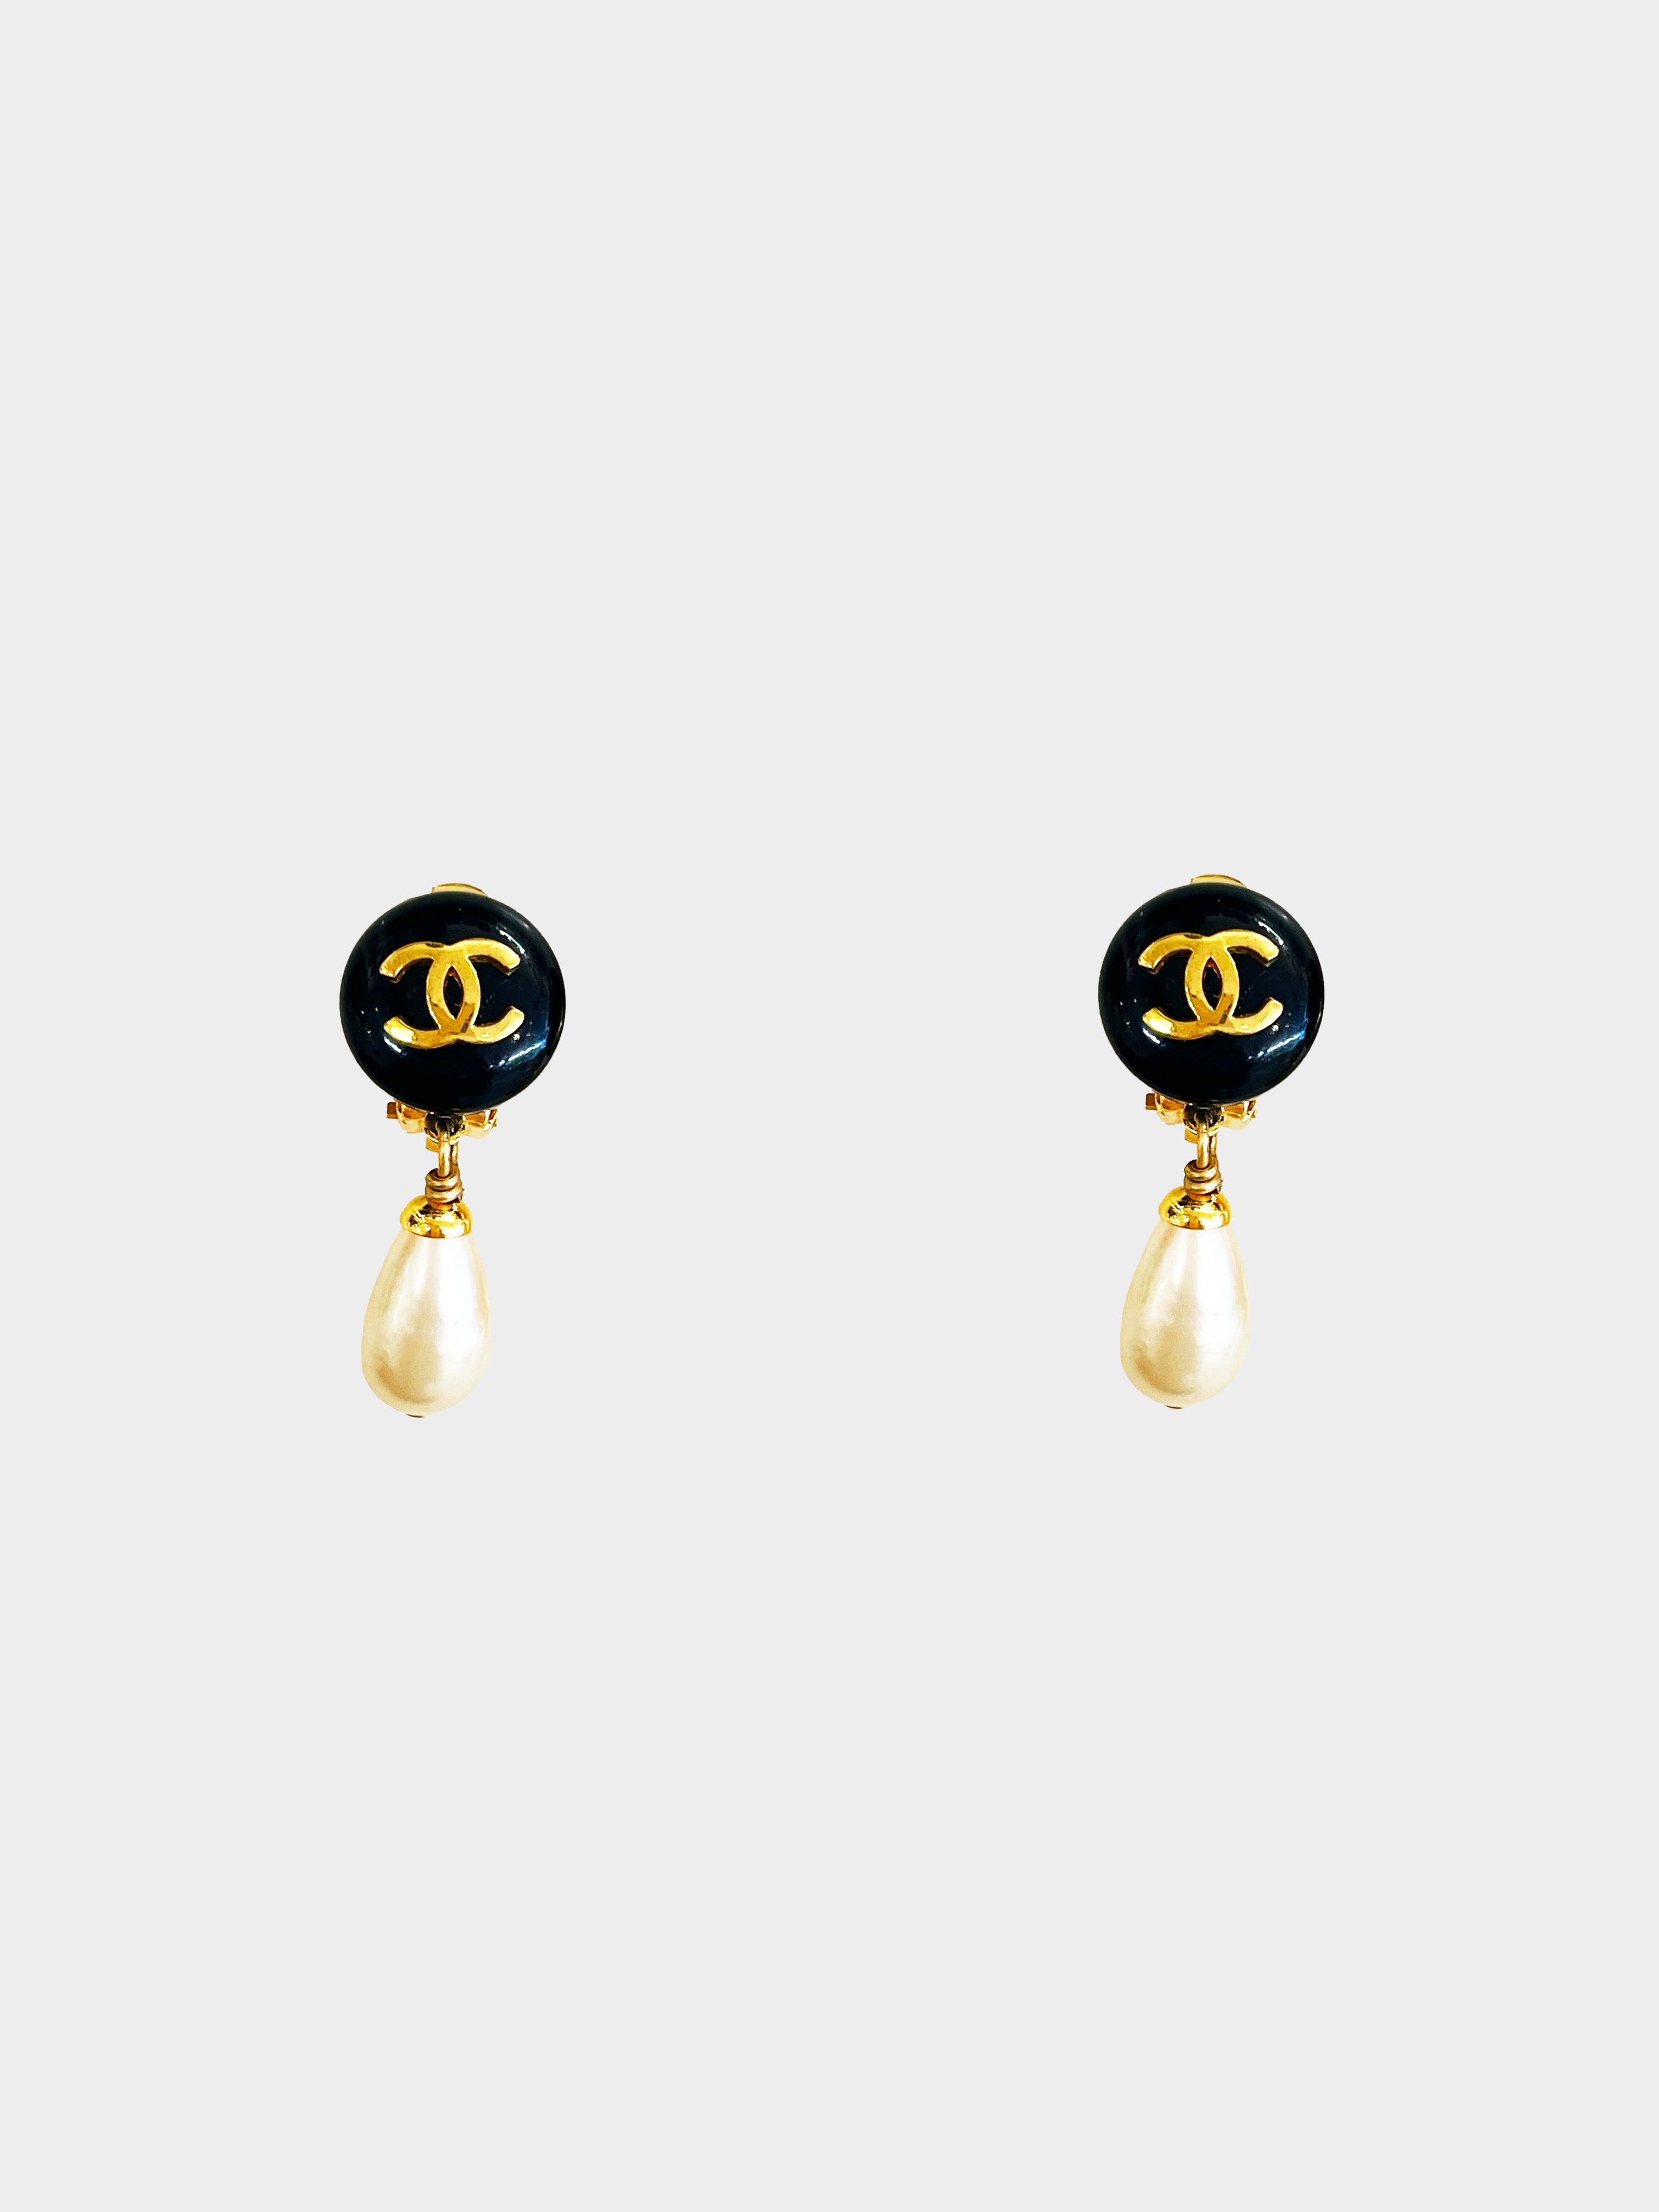 Chanel FW 1993 Pearl Drop Clip-On Earrings